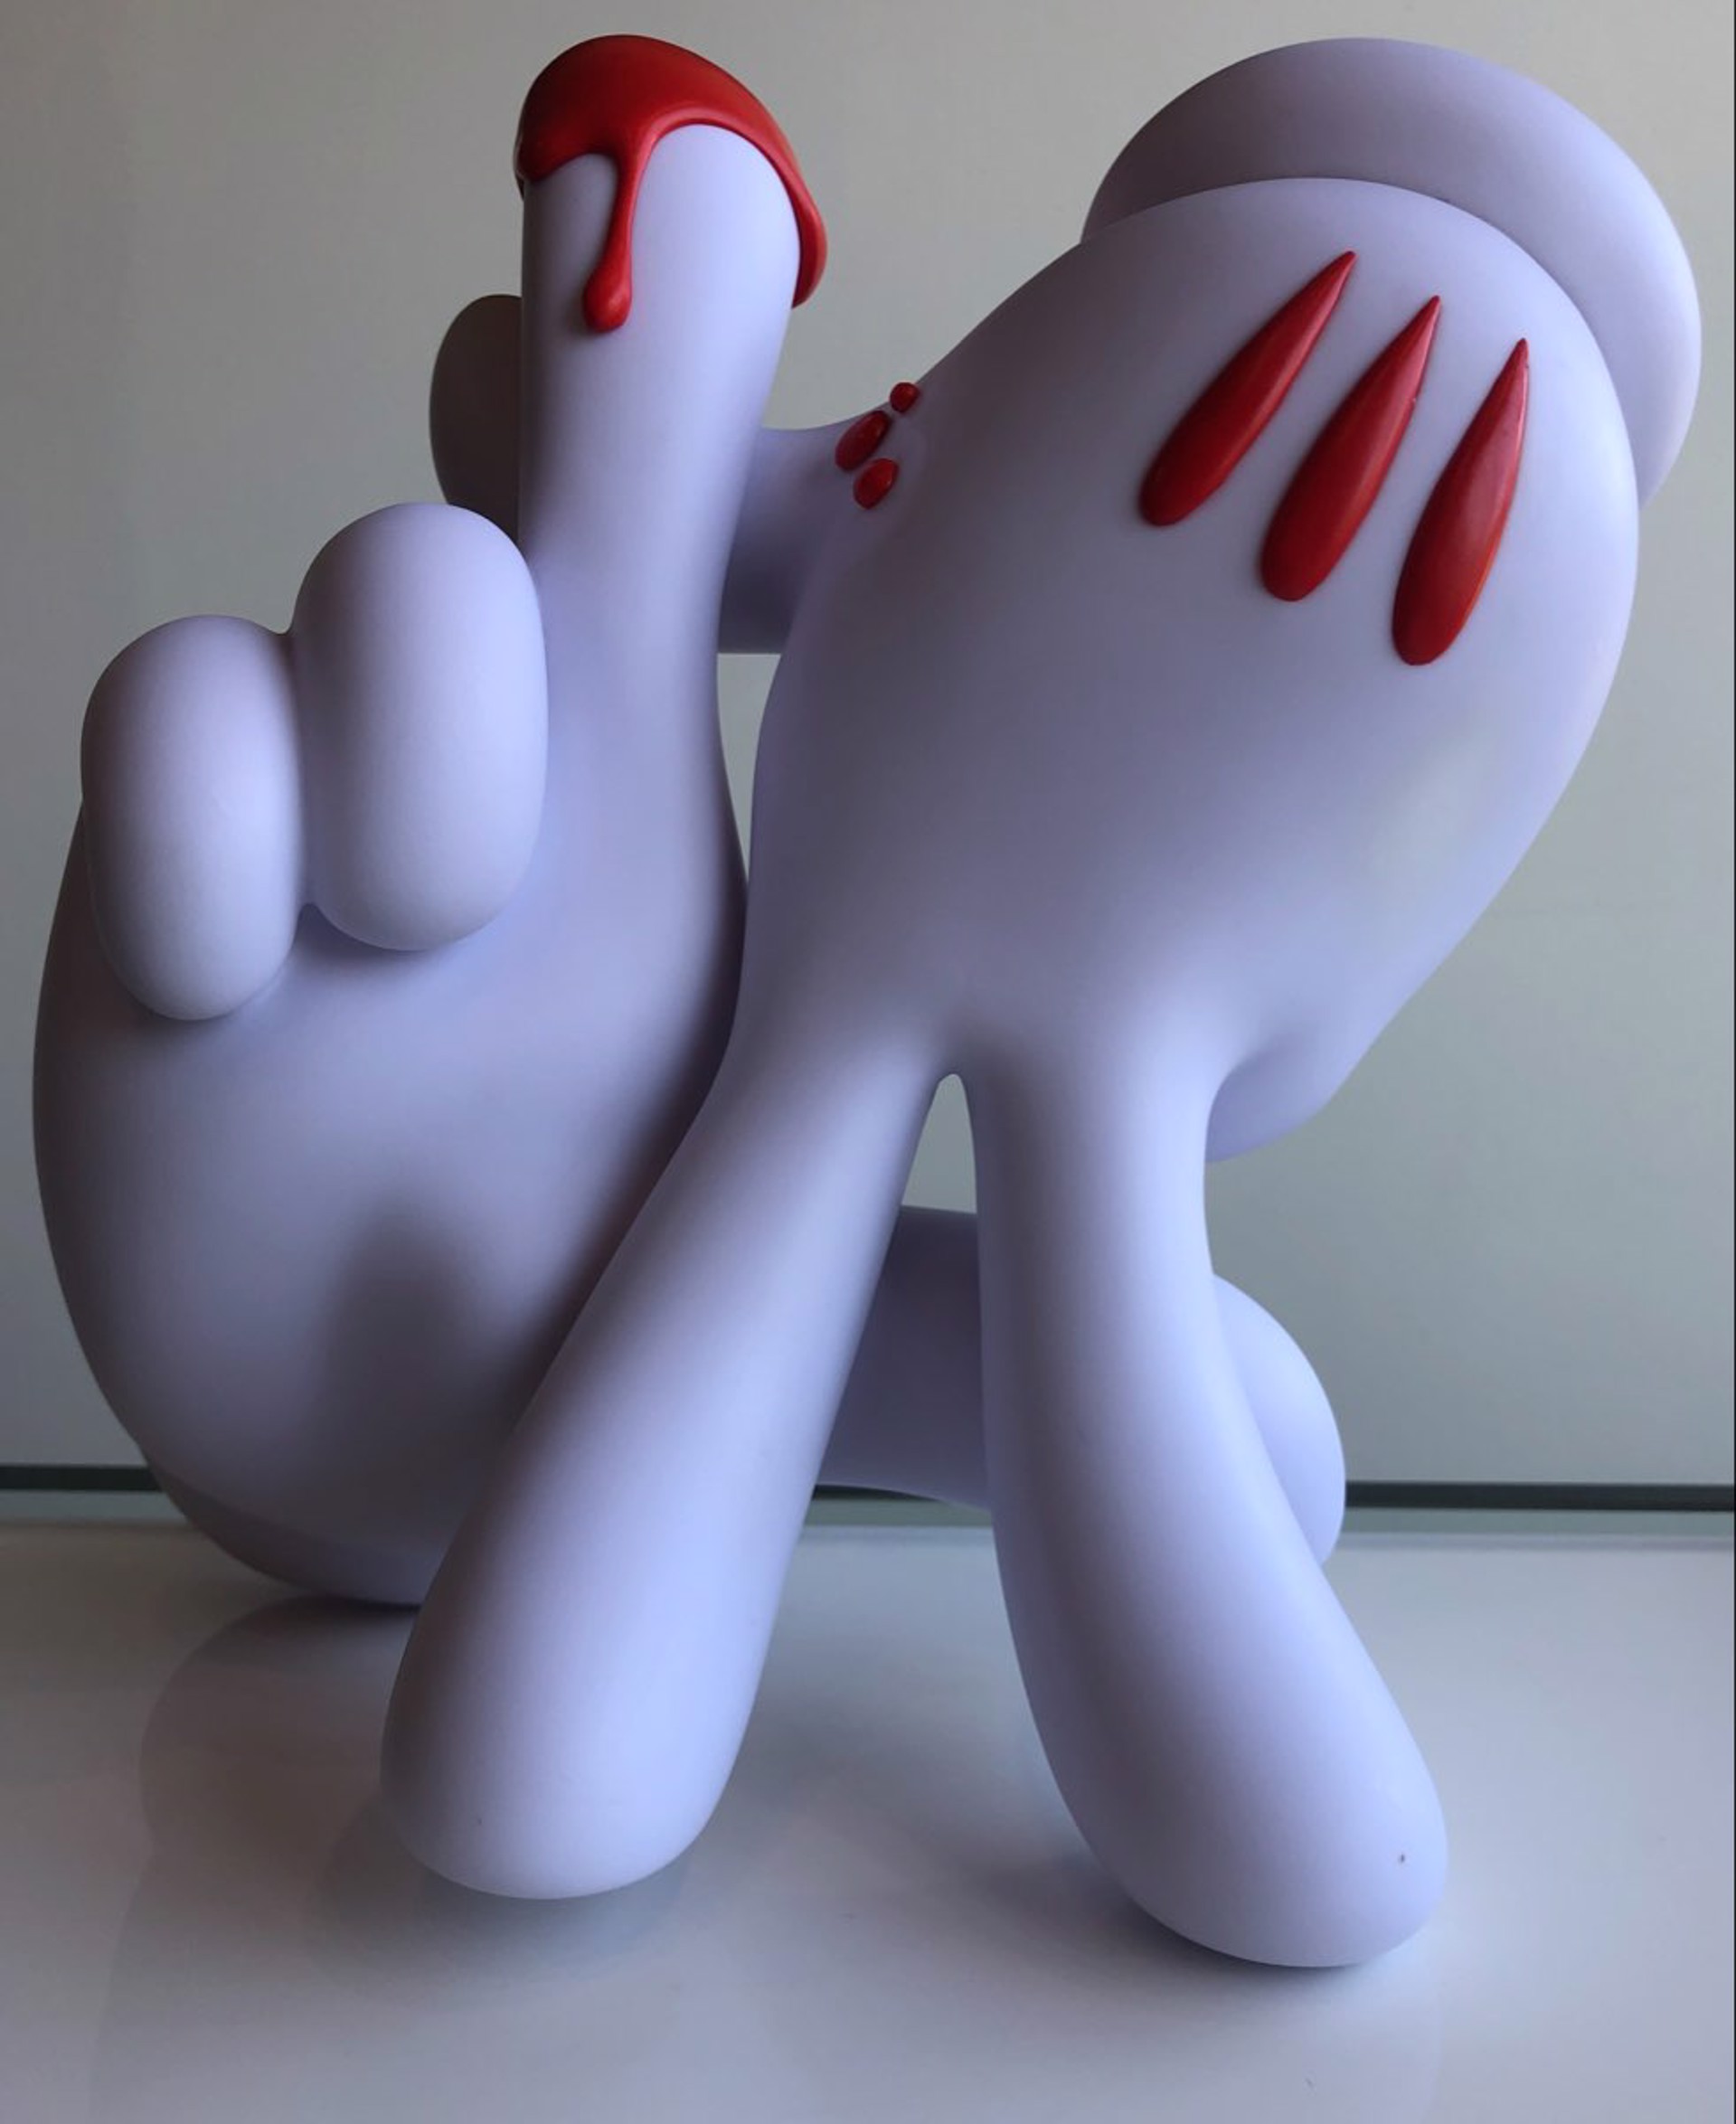 LA Hands (Red Finger Edition) by OG Slick